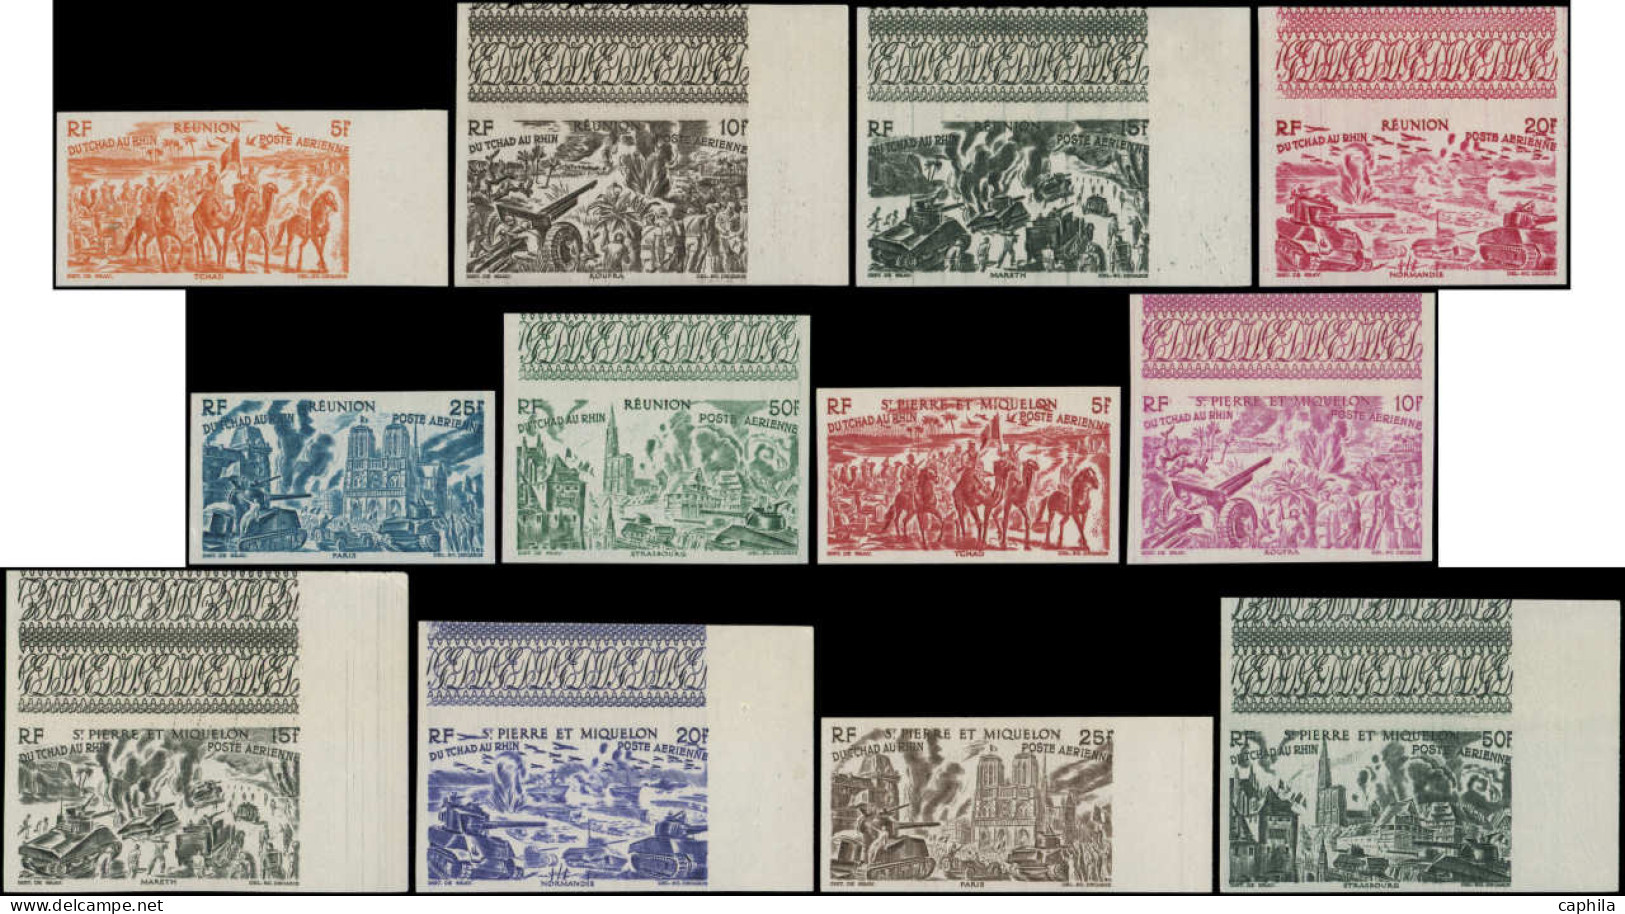 ** COLONIES SERIES - Poste Aérienne - 1946, Tchad au Rhin, série complète de 90 valeurs non dentelées